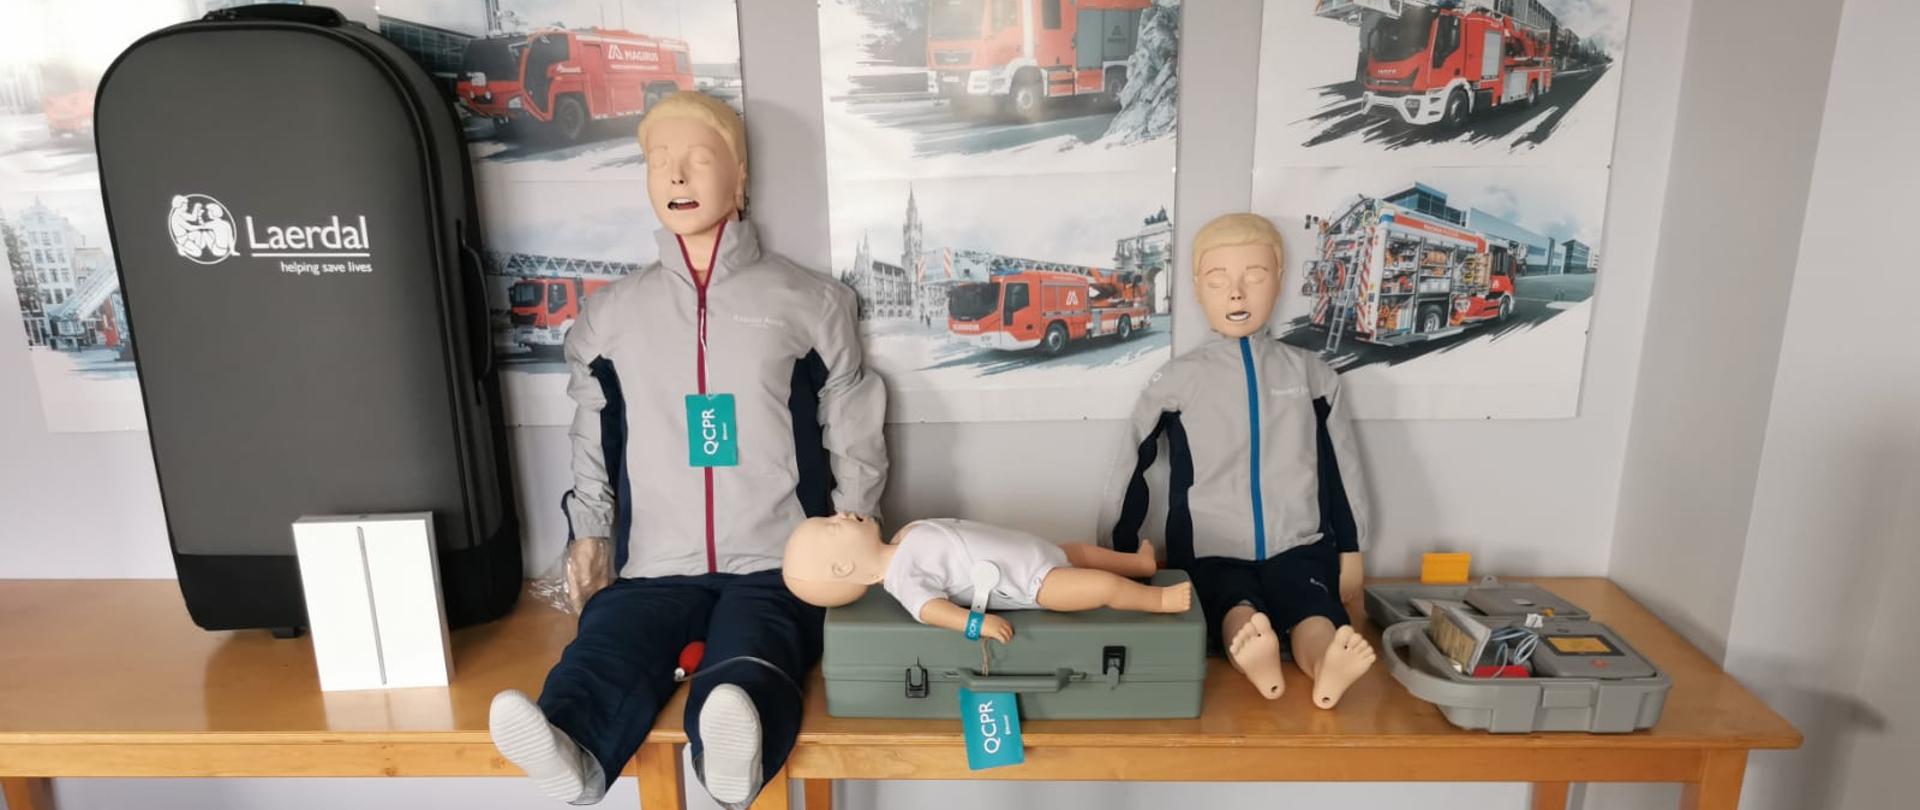 Zdjęcie przedstawia kompletny zestaw do szkolenia z zakresu kwalifikowanej pierwszej pomocy. Na zdjęciu znajdują się: fantom osoby dorosłej, fantom dziecka, fantom niemowlaka oraz pojemniki do przechowywania sprzętu.